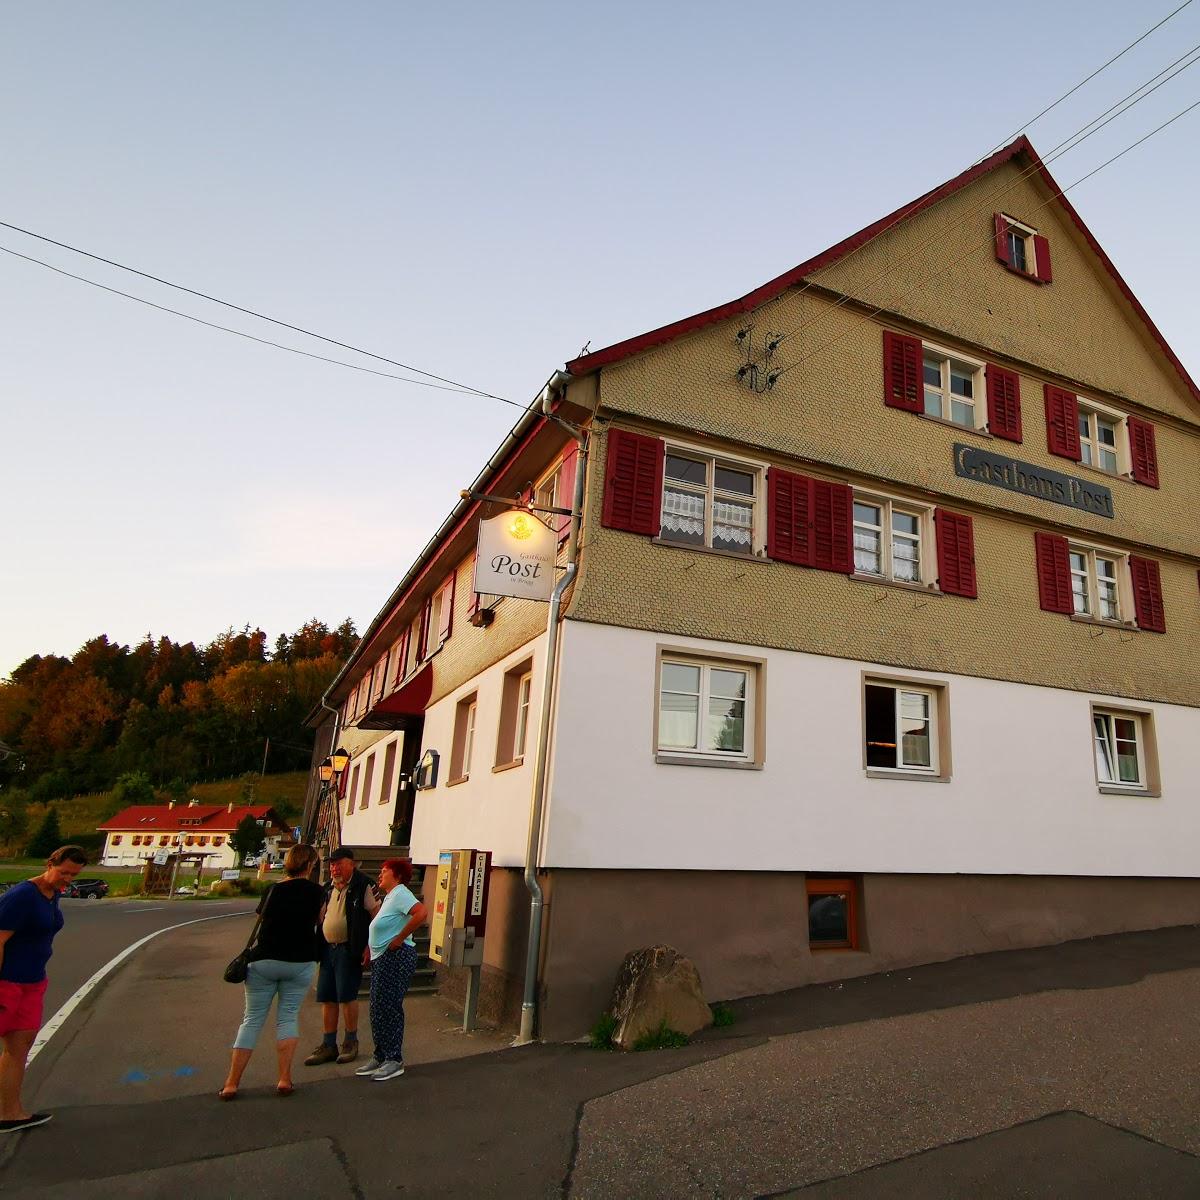 Restaurant "Gasthaus Post in Brugg - Roland und Claudia Weidle" in Gestratz